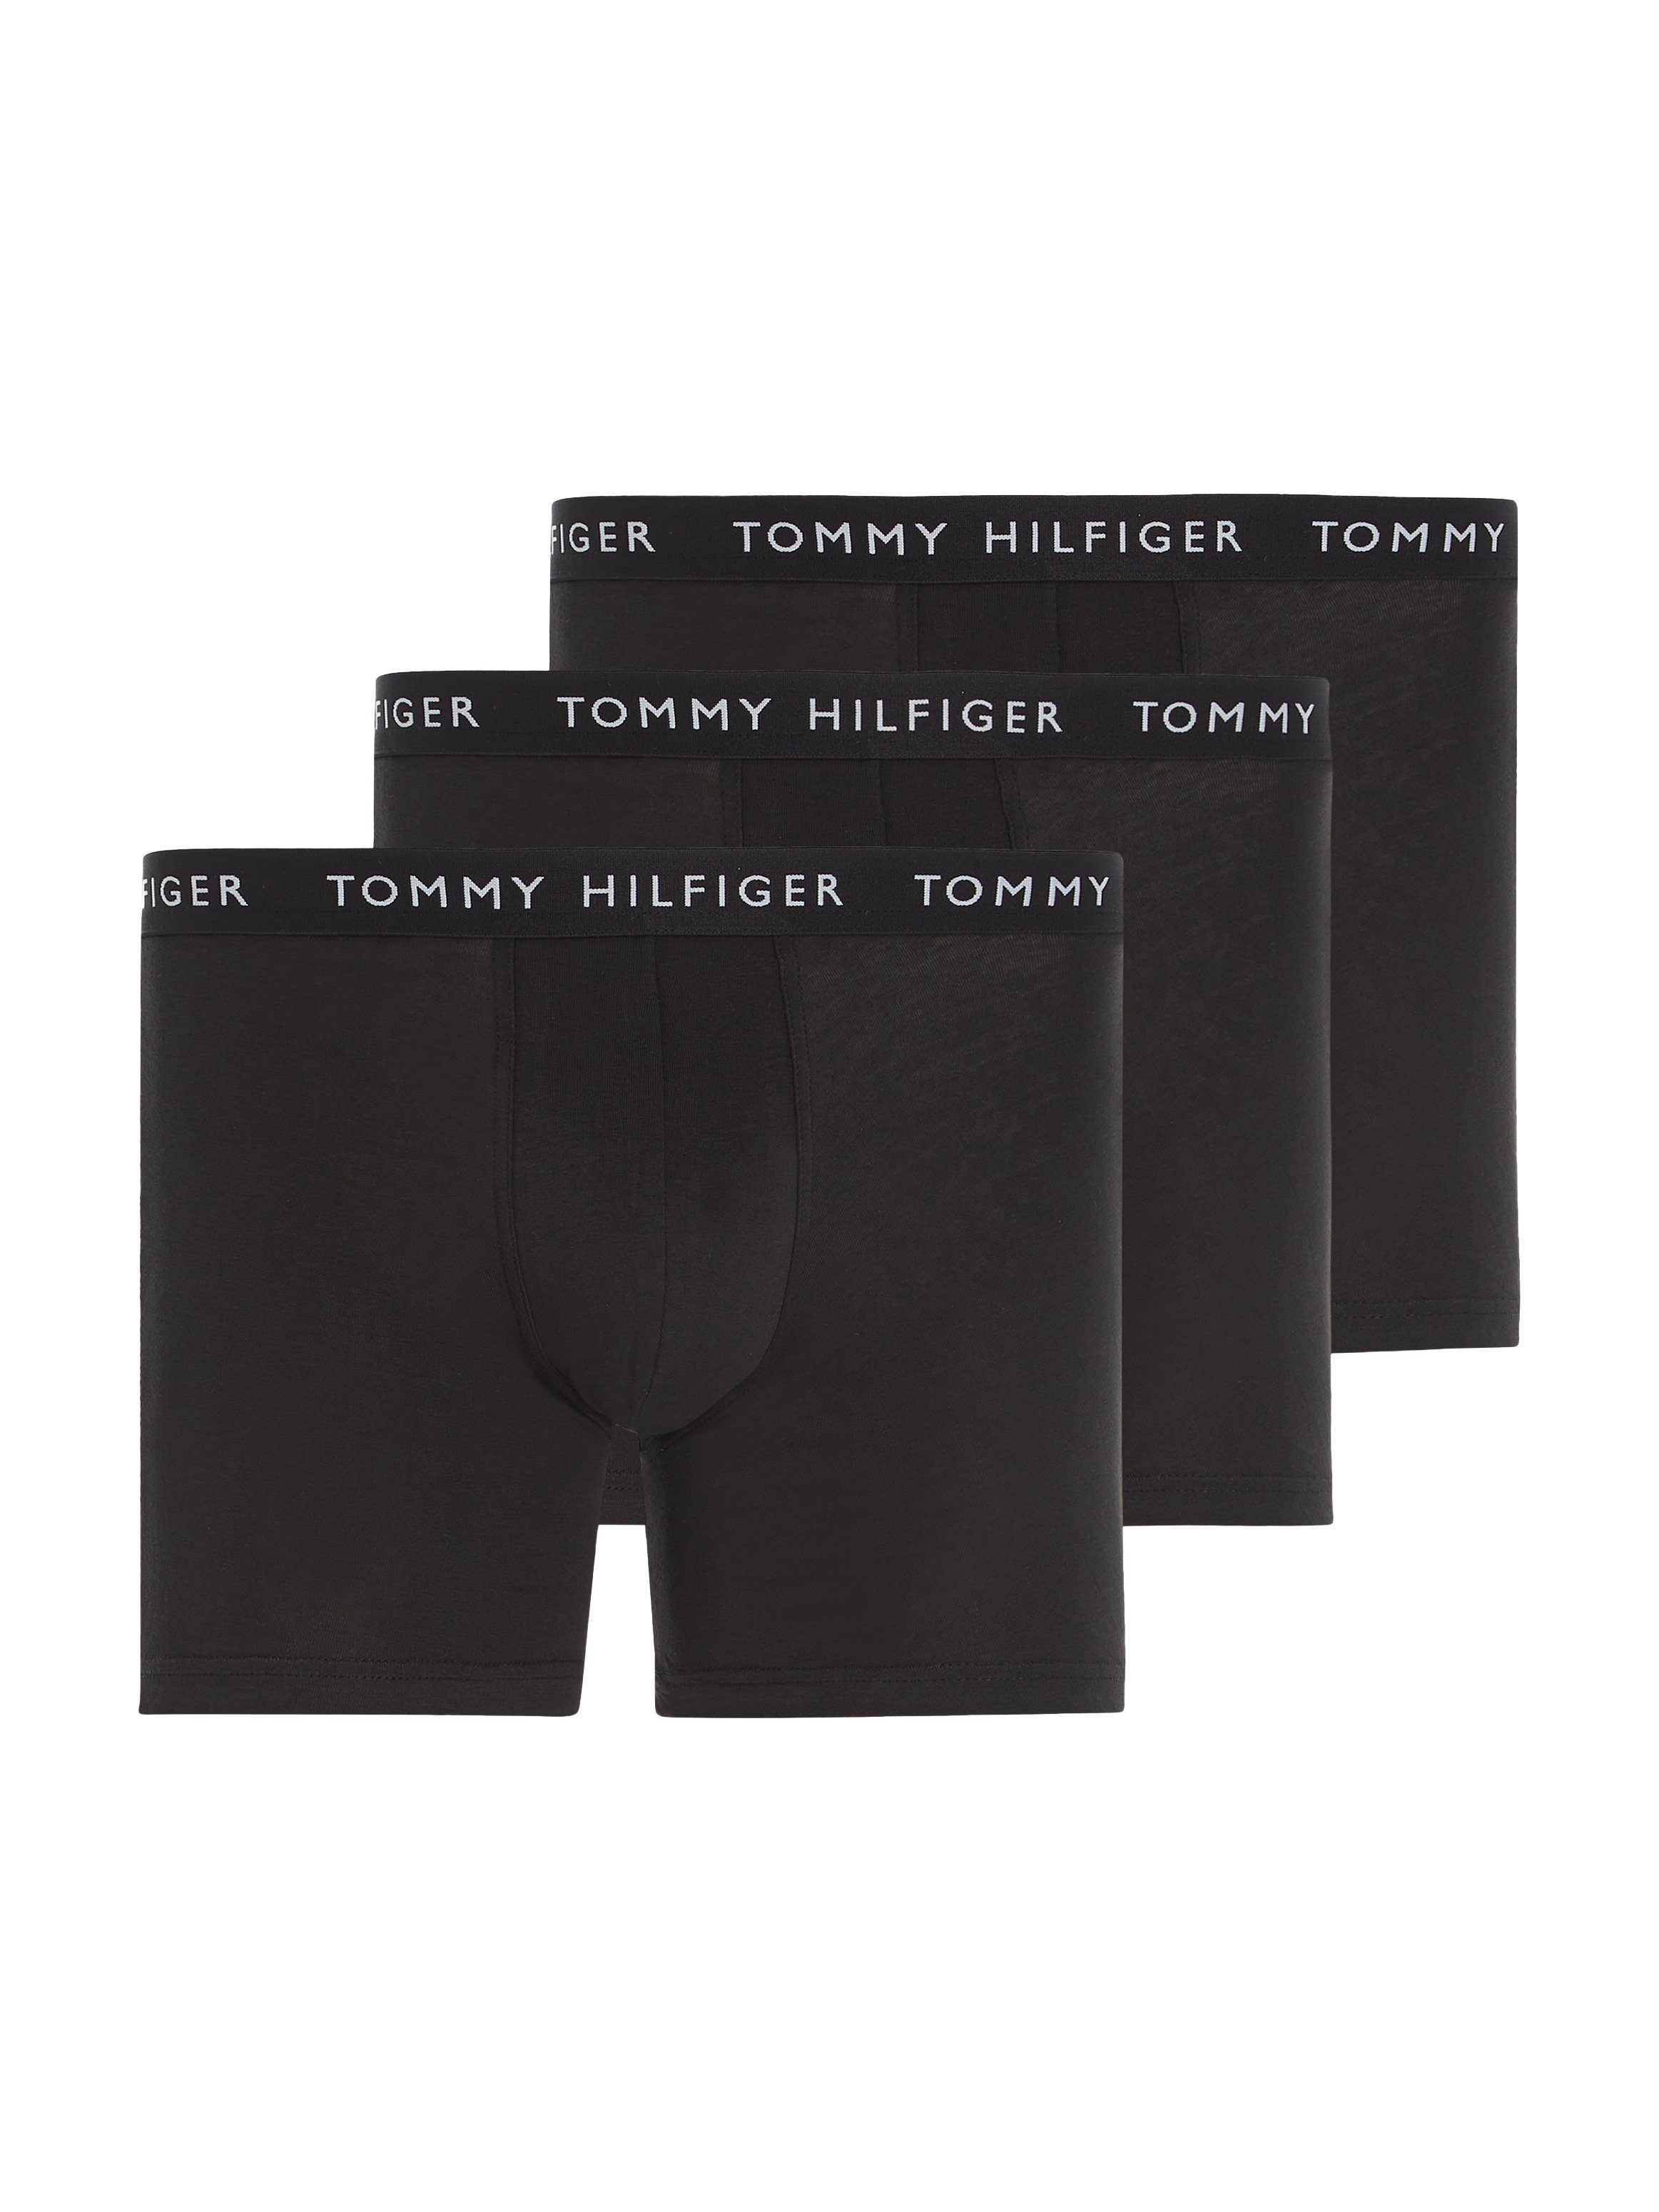 Hilfiger schwarz, Underwear schwarz, Boxer Wäschebund Tommy schwarz 3er-Pack) (Packung, mit